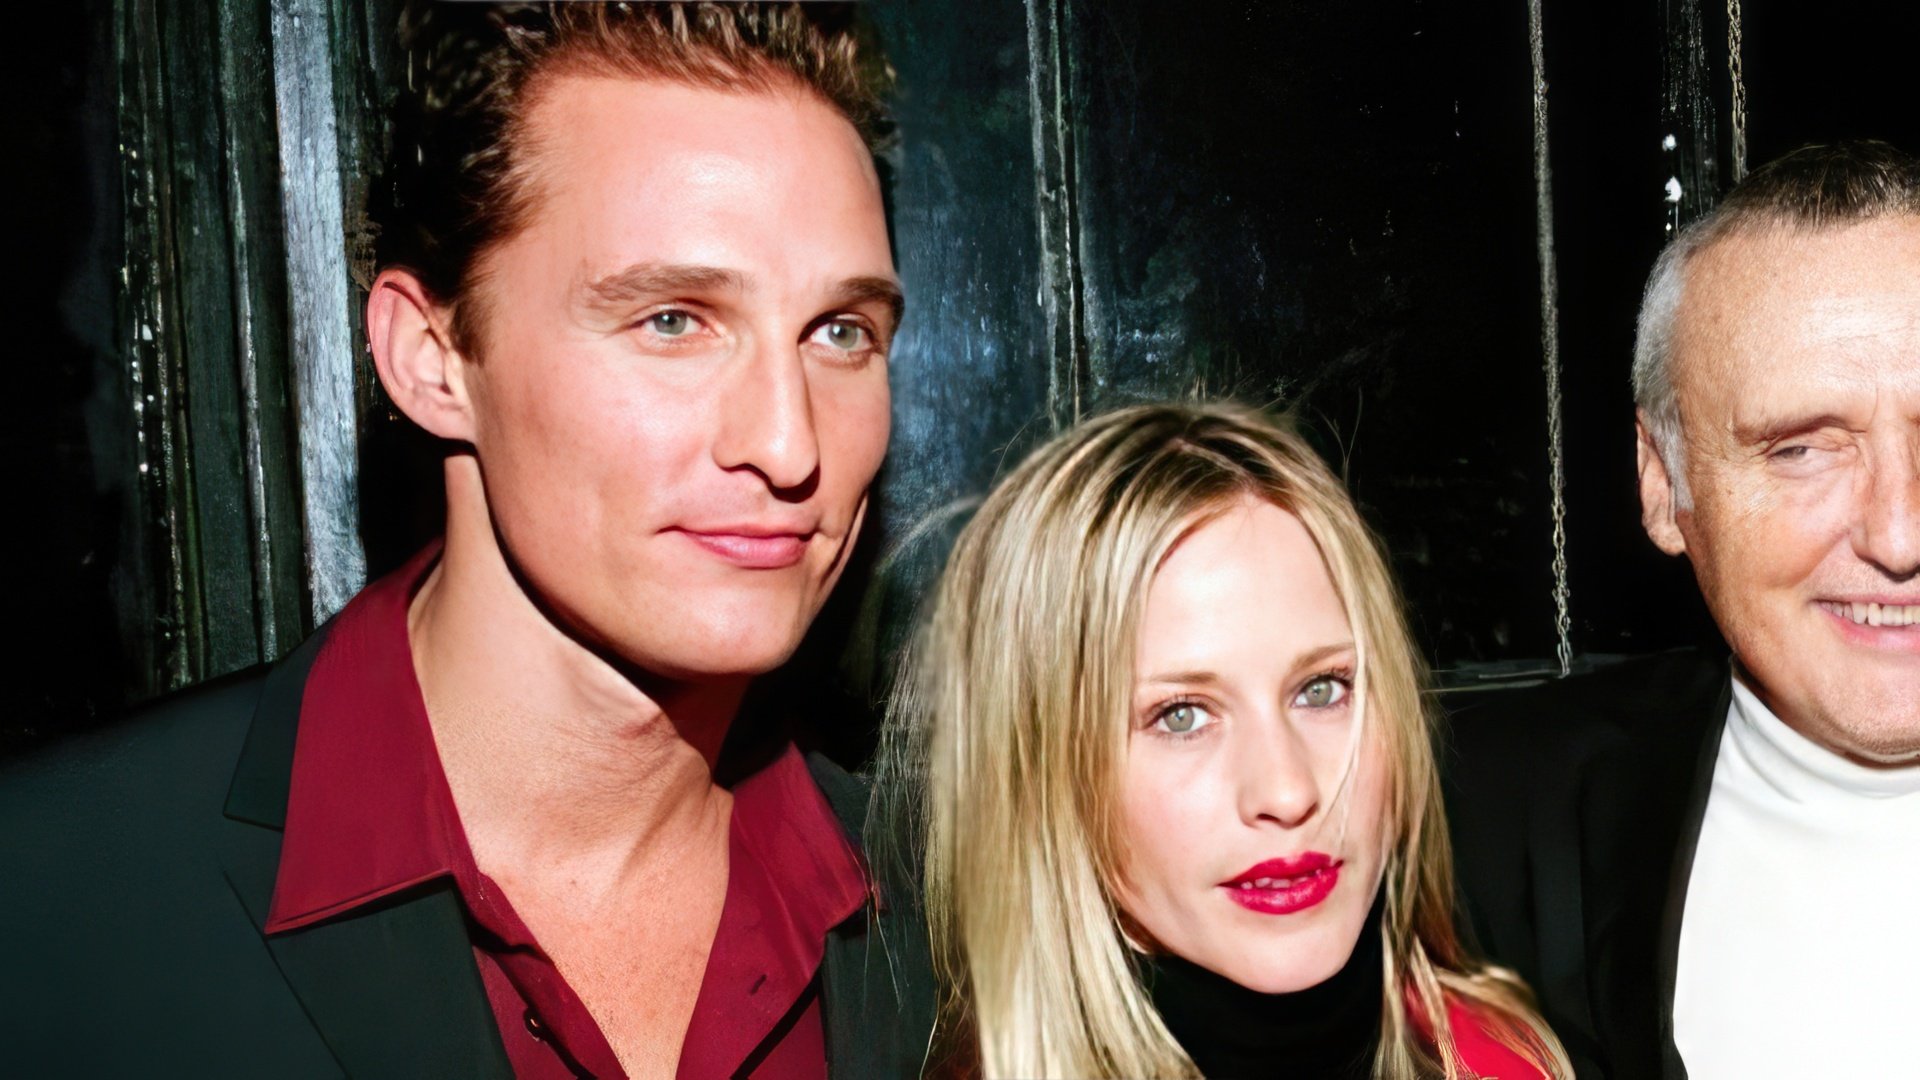 In the photo: Matthew McConaughey and Patricia Arquette